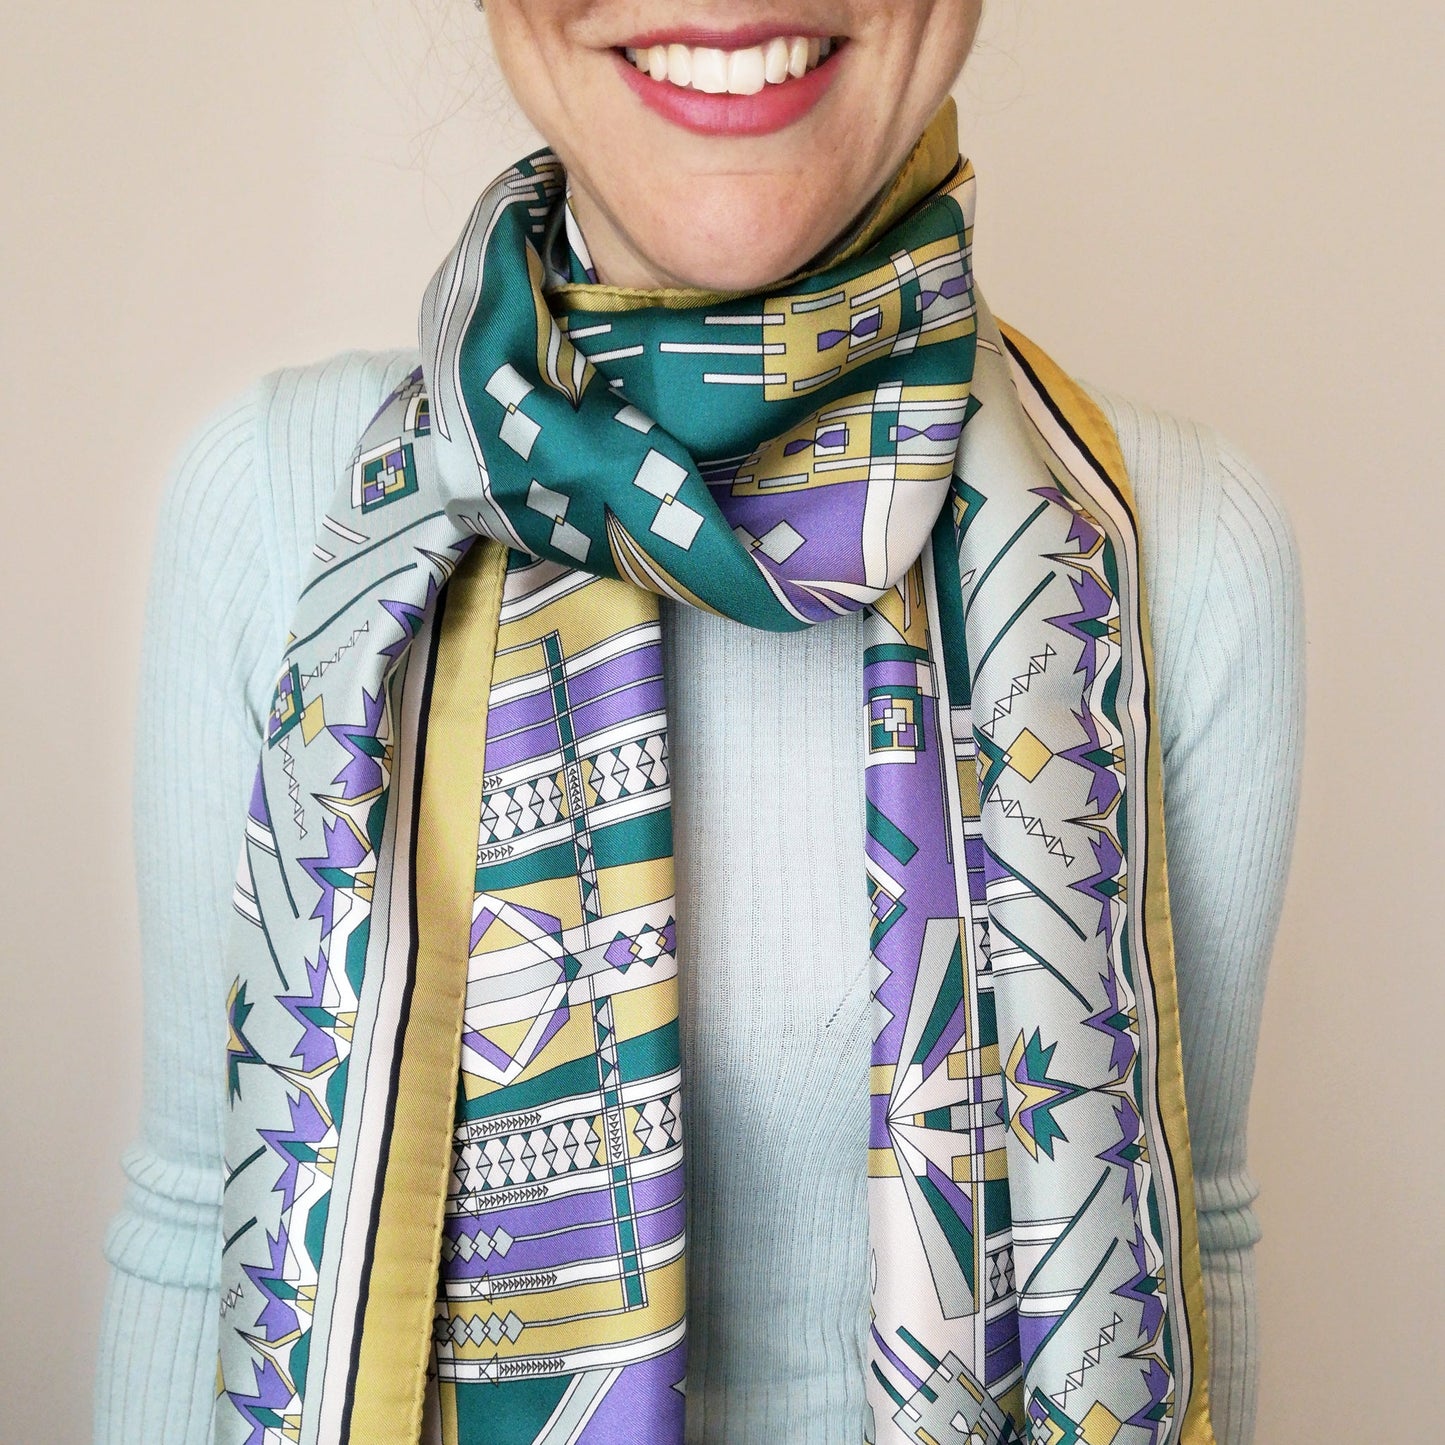 foulard in seta naturale forma rettangolare indossato al collo con disegno creativo stampato